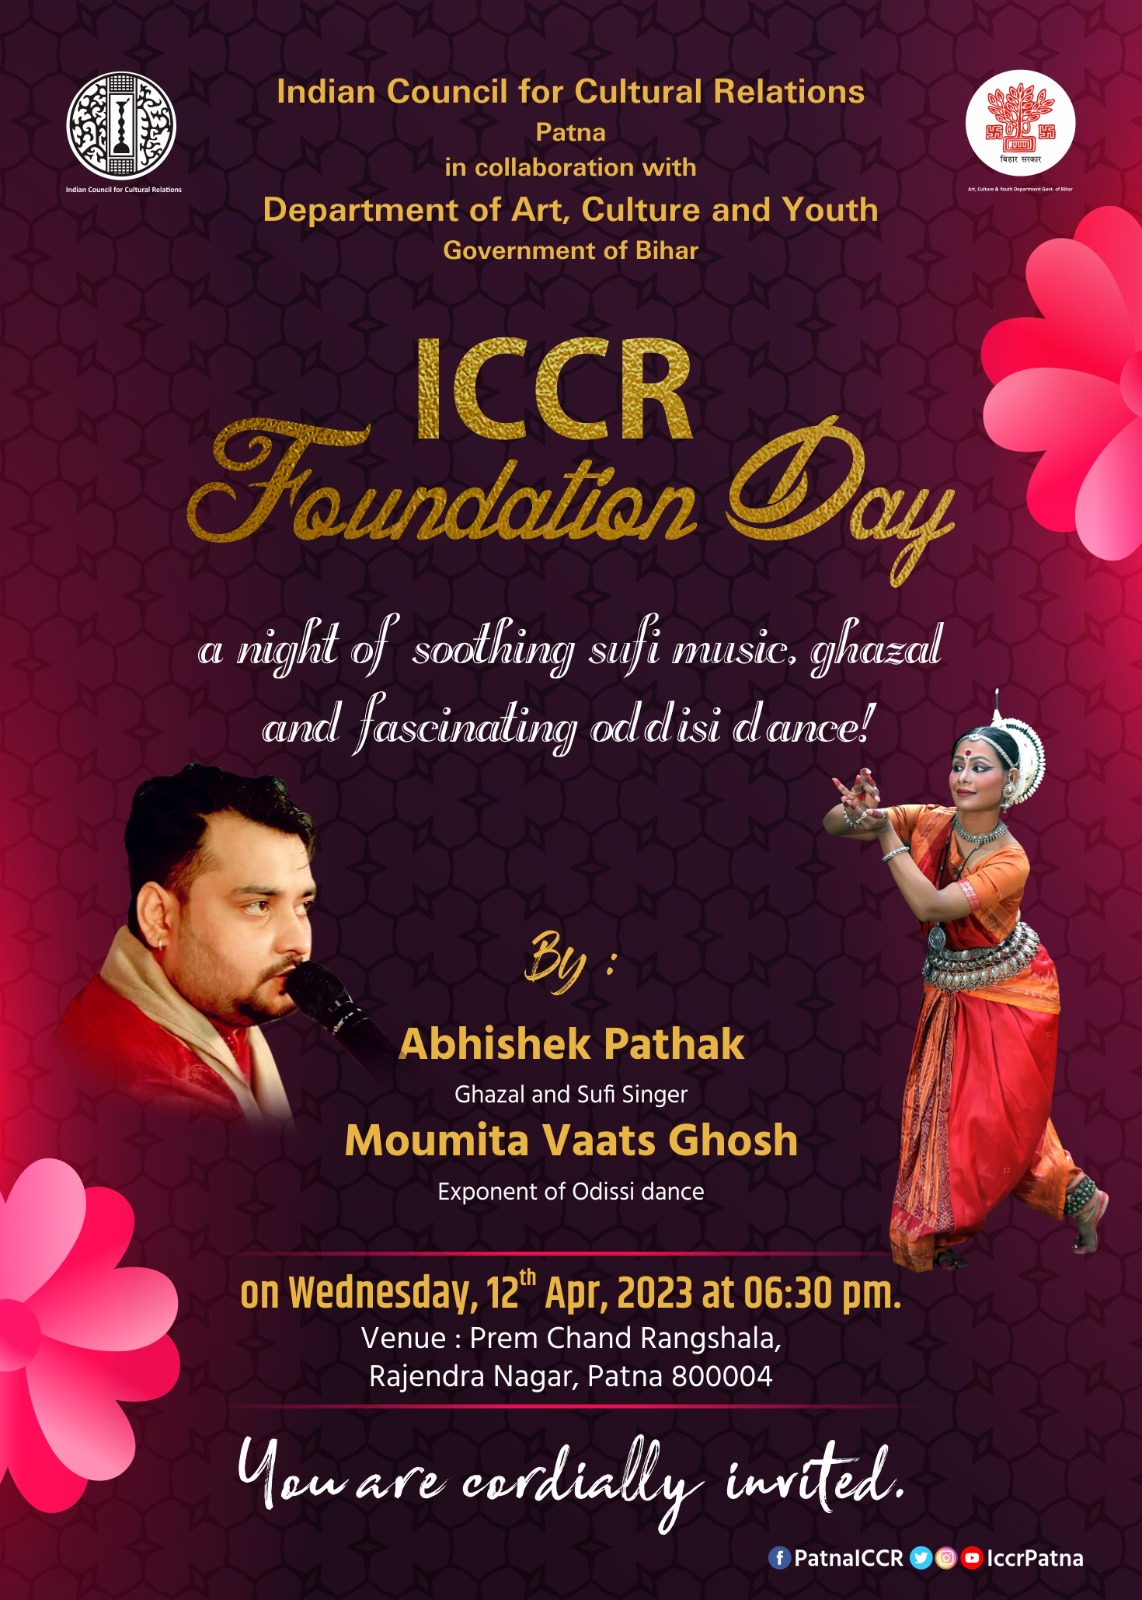 E-invite for ICCR Foundation Day